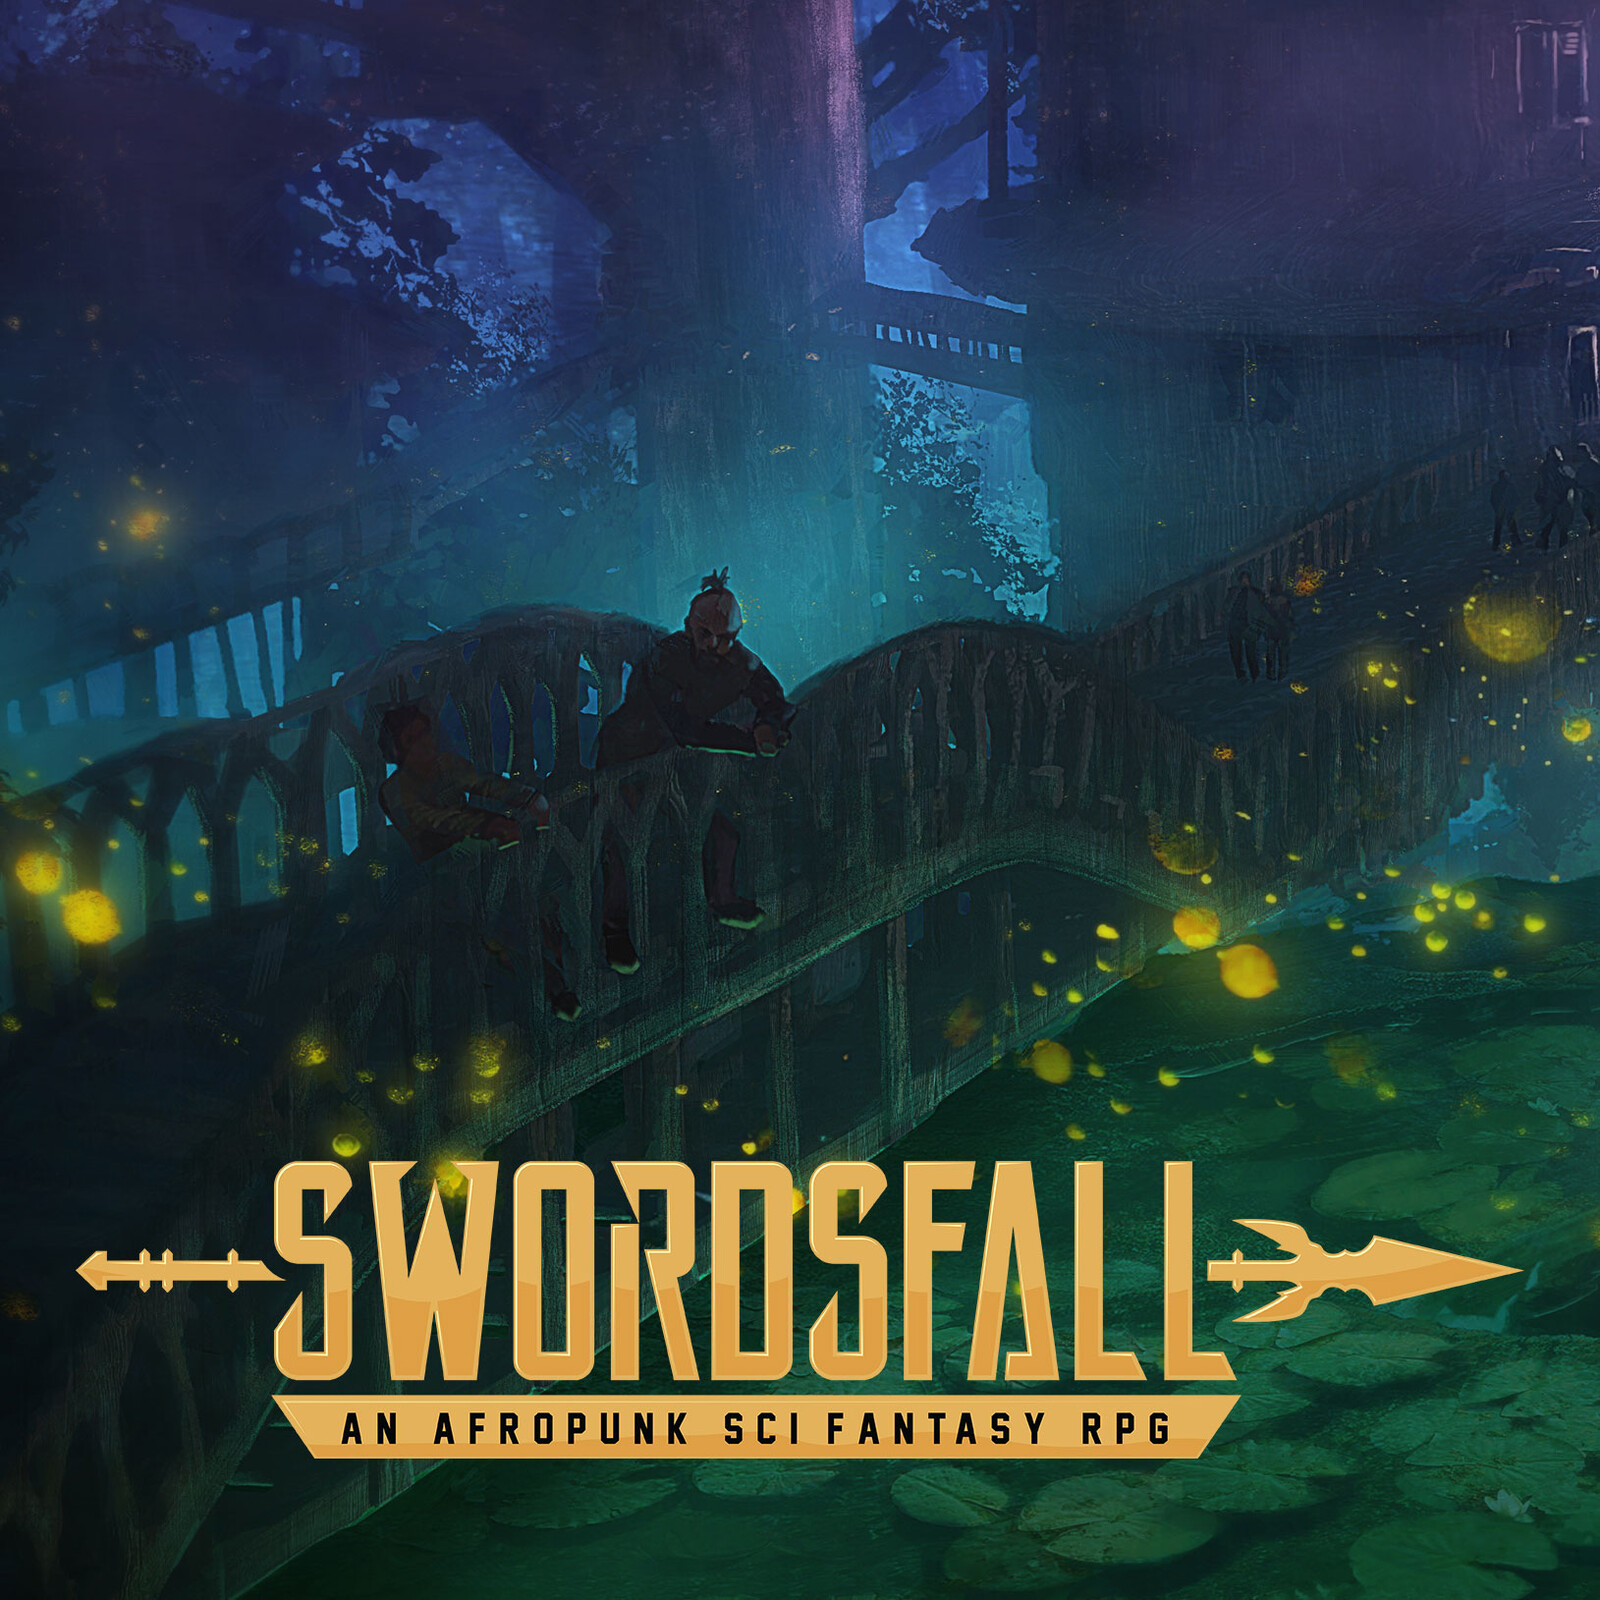 Swordsfall - Garuda at night